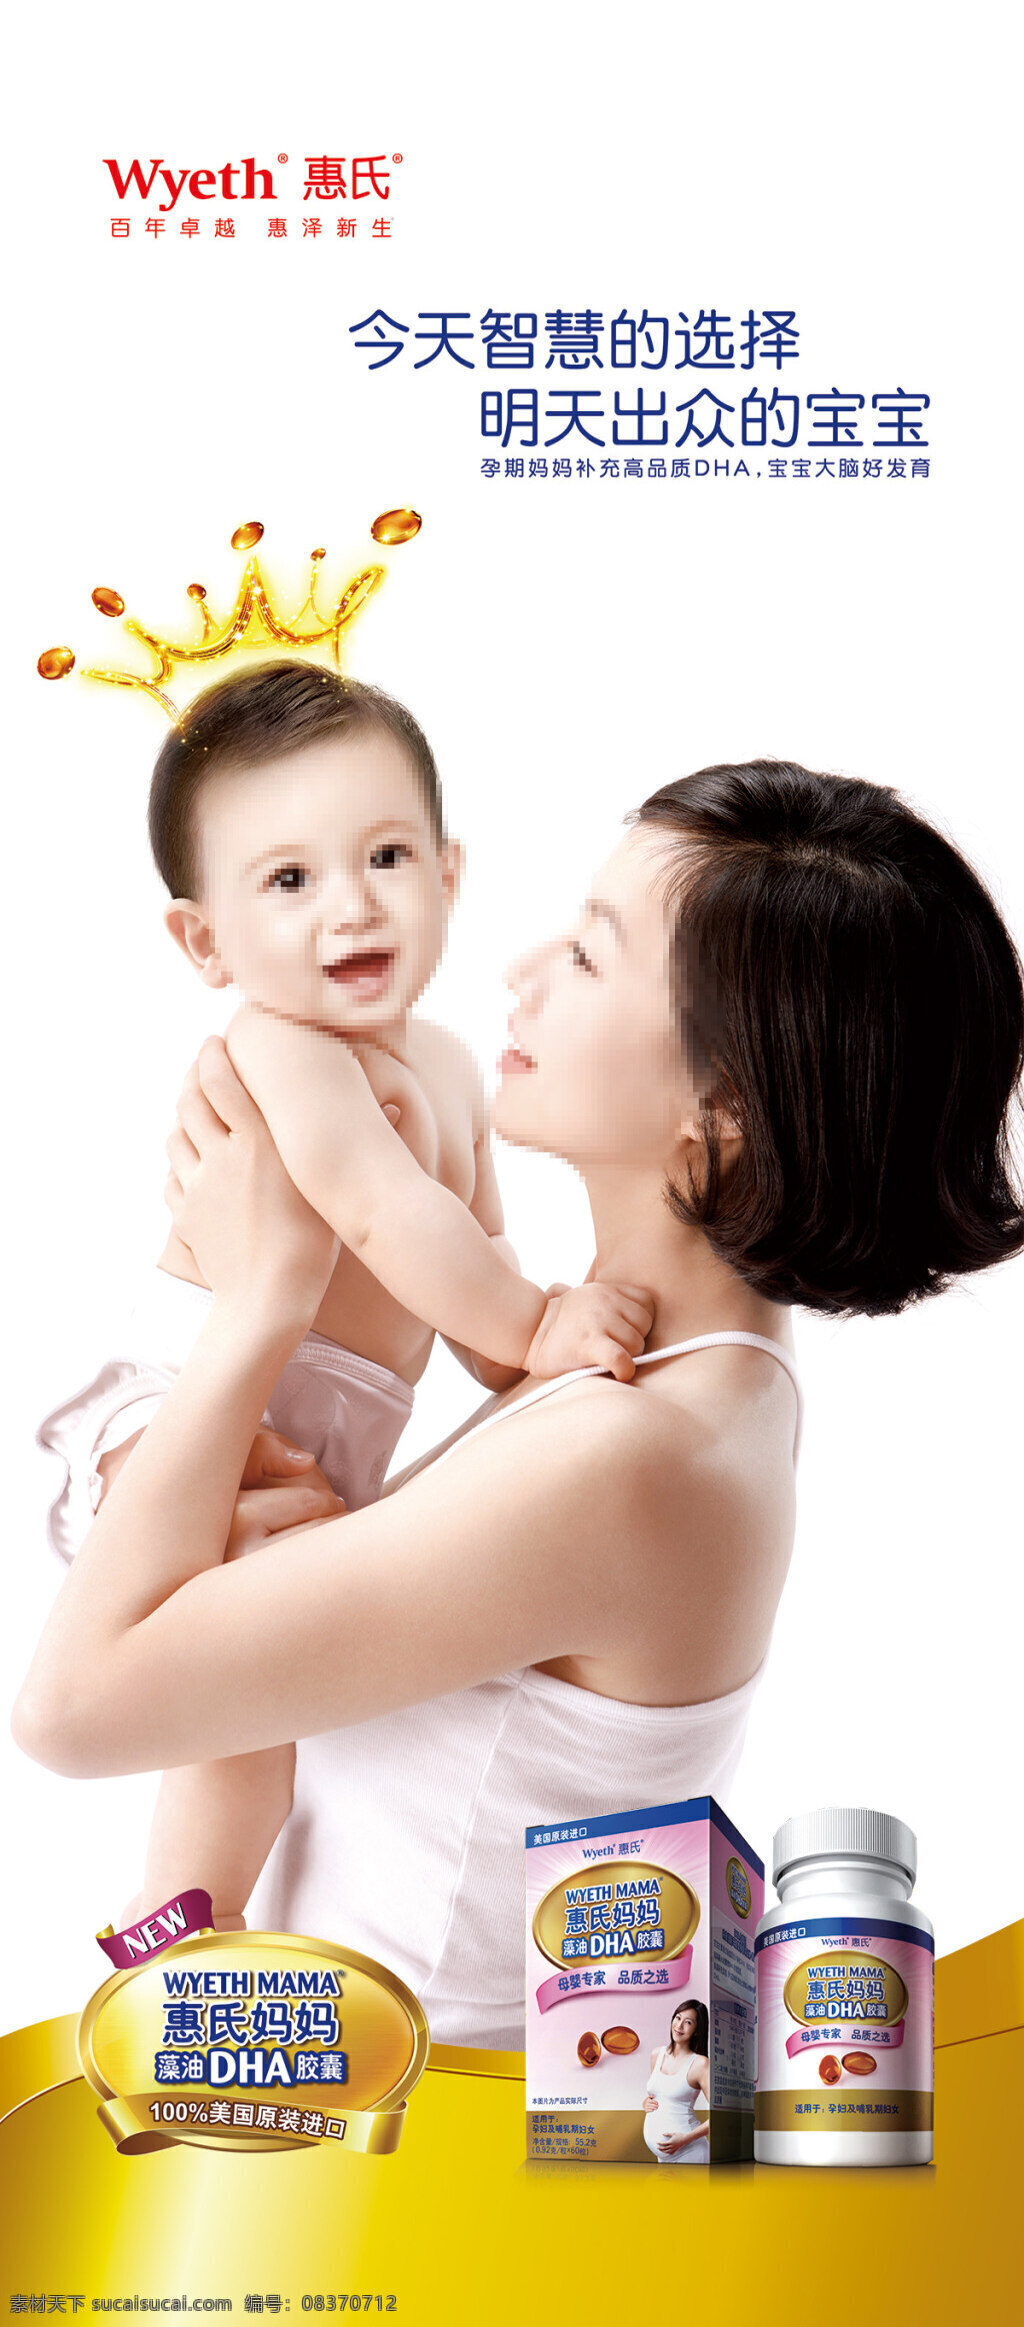 藻 油 dha 胶囊 展架 惠 氏 保健品 宣传 x x展架 姑姑 海报 妈妈 婴儿 宝宝 孕妇 海报素材 广告设计模板 psd素材 白色